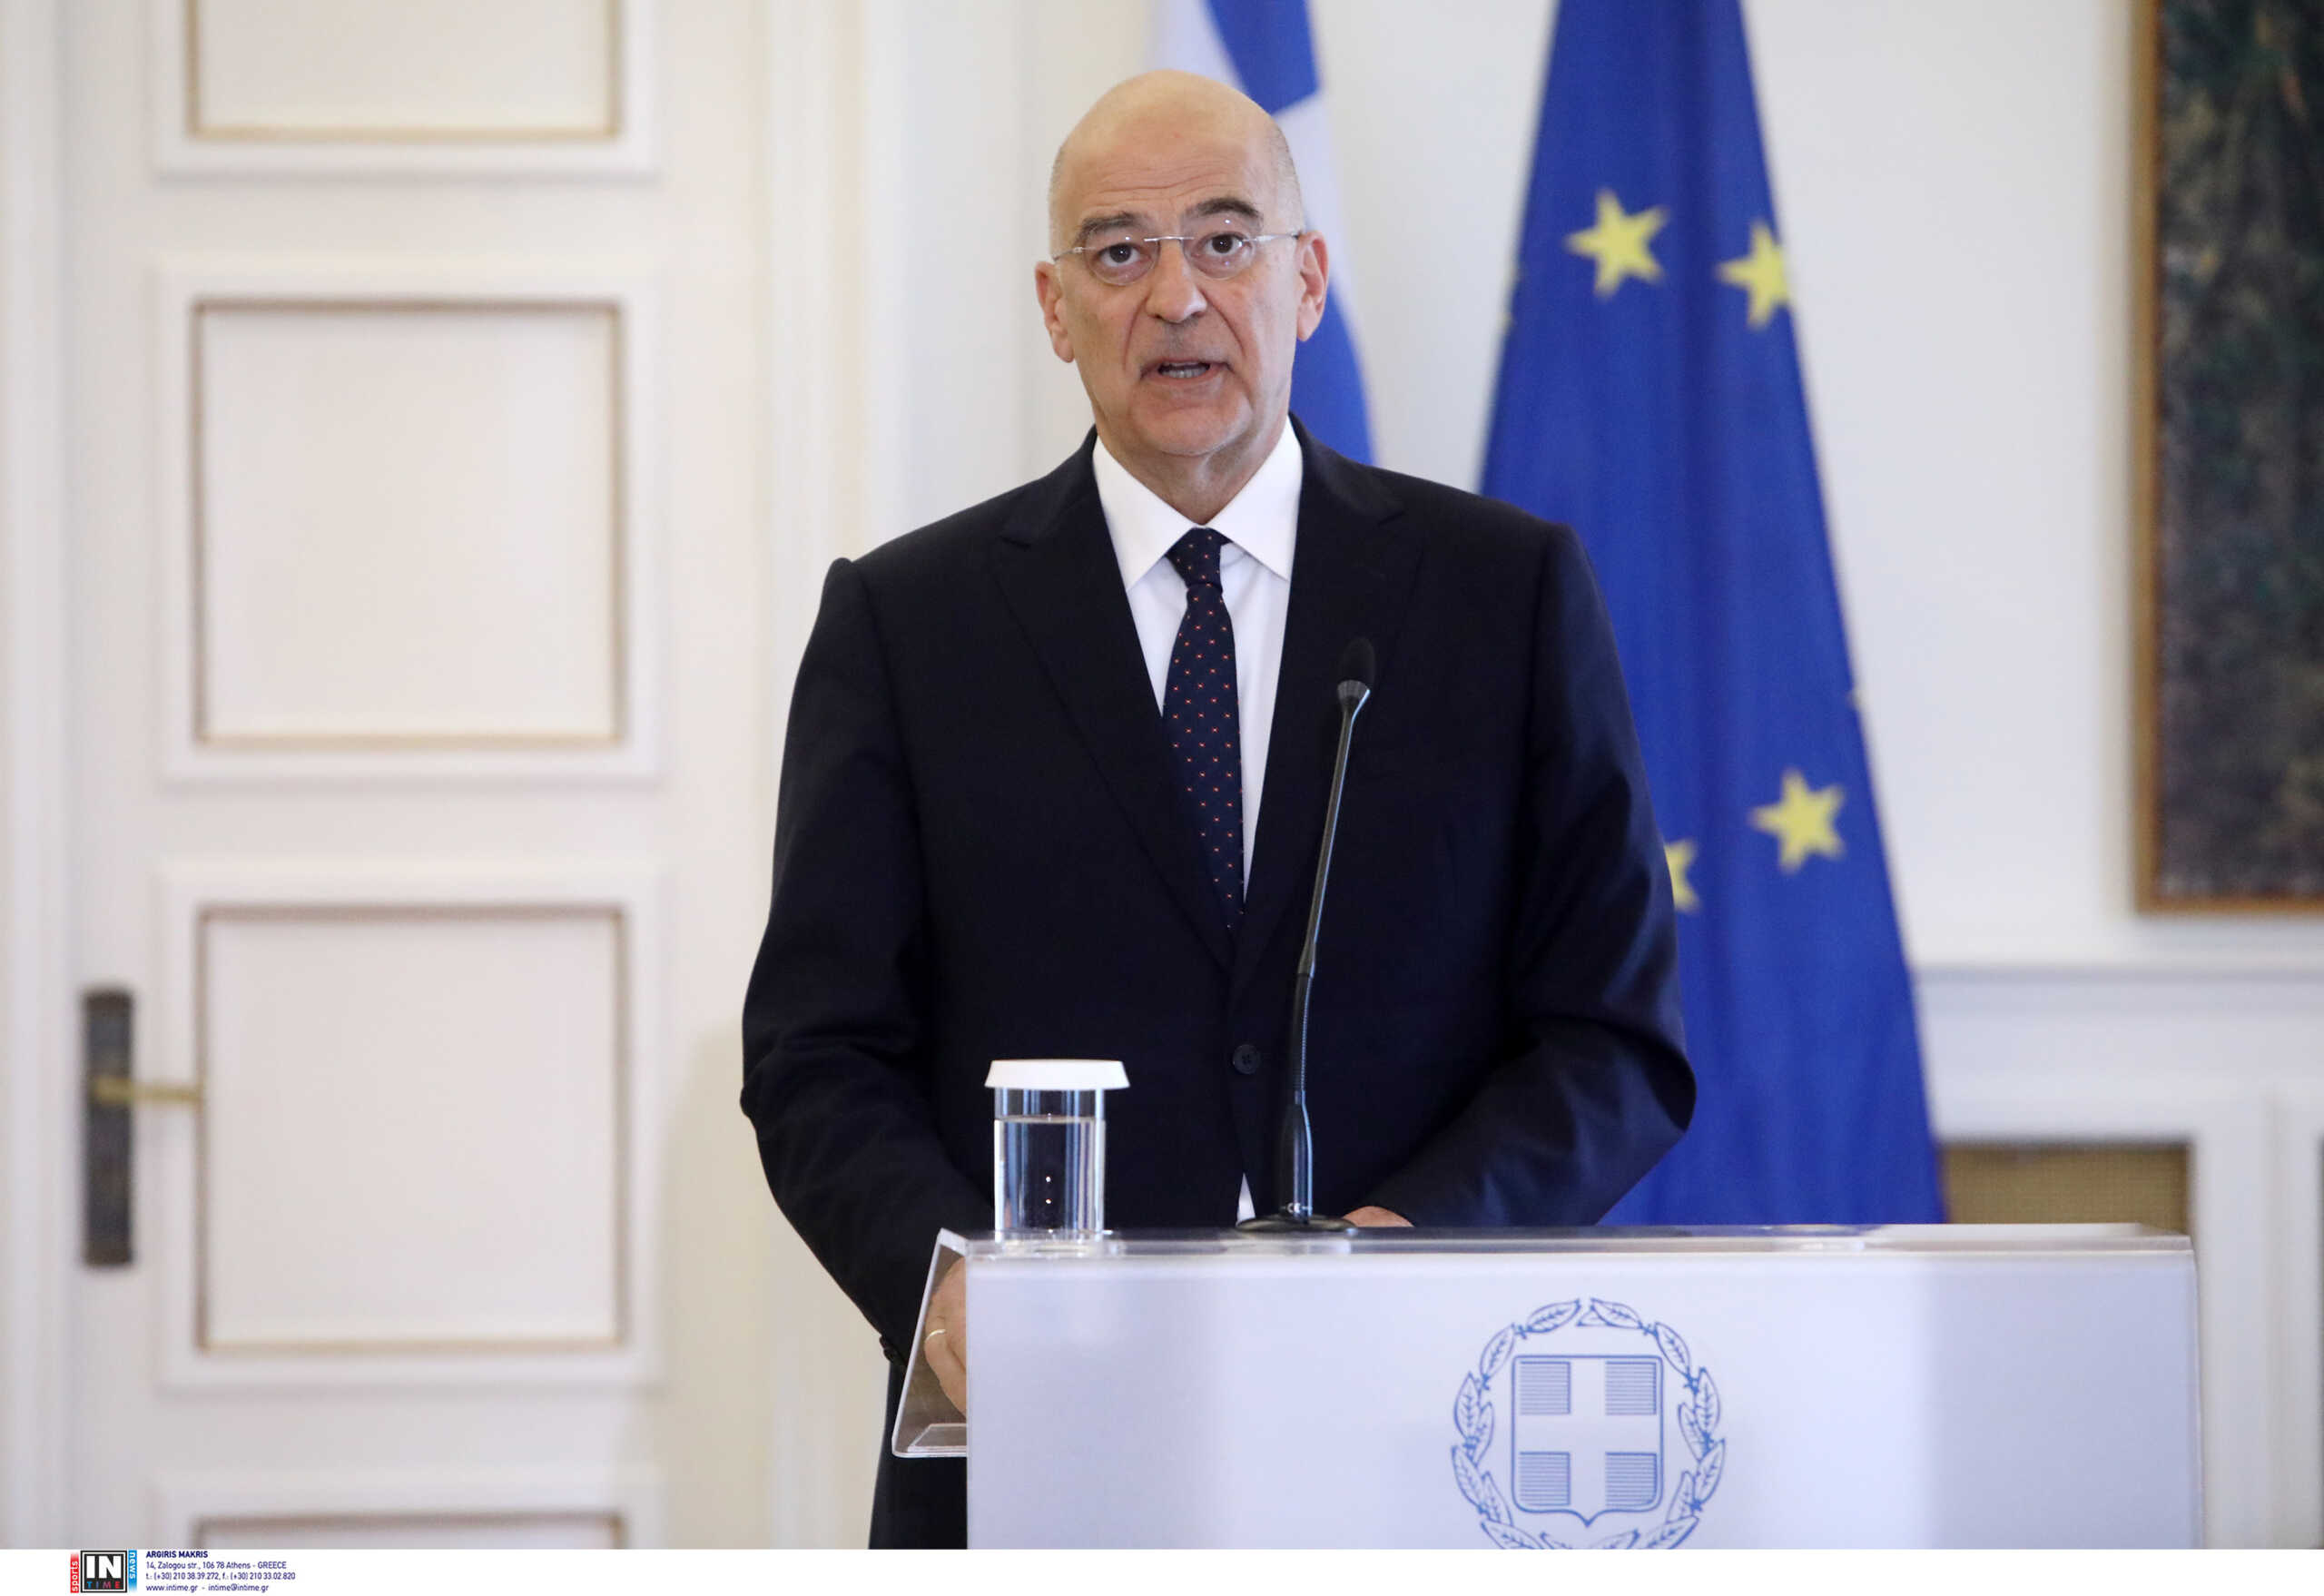 Υπουργείο Εξωτερικών: Η Ελλάδα θα υπερασπιστεί τα δικαιώματά της εφόσον παραστεί ανάγκη